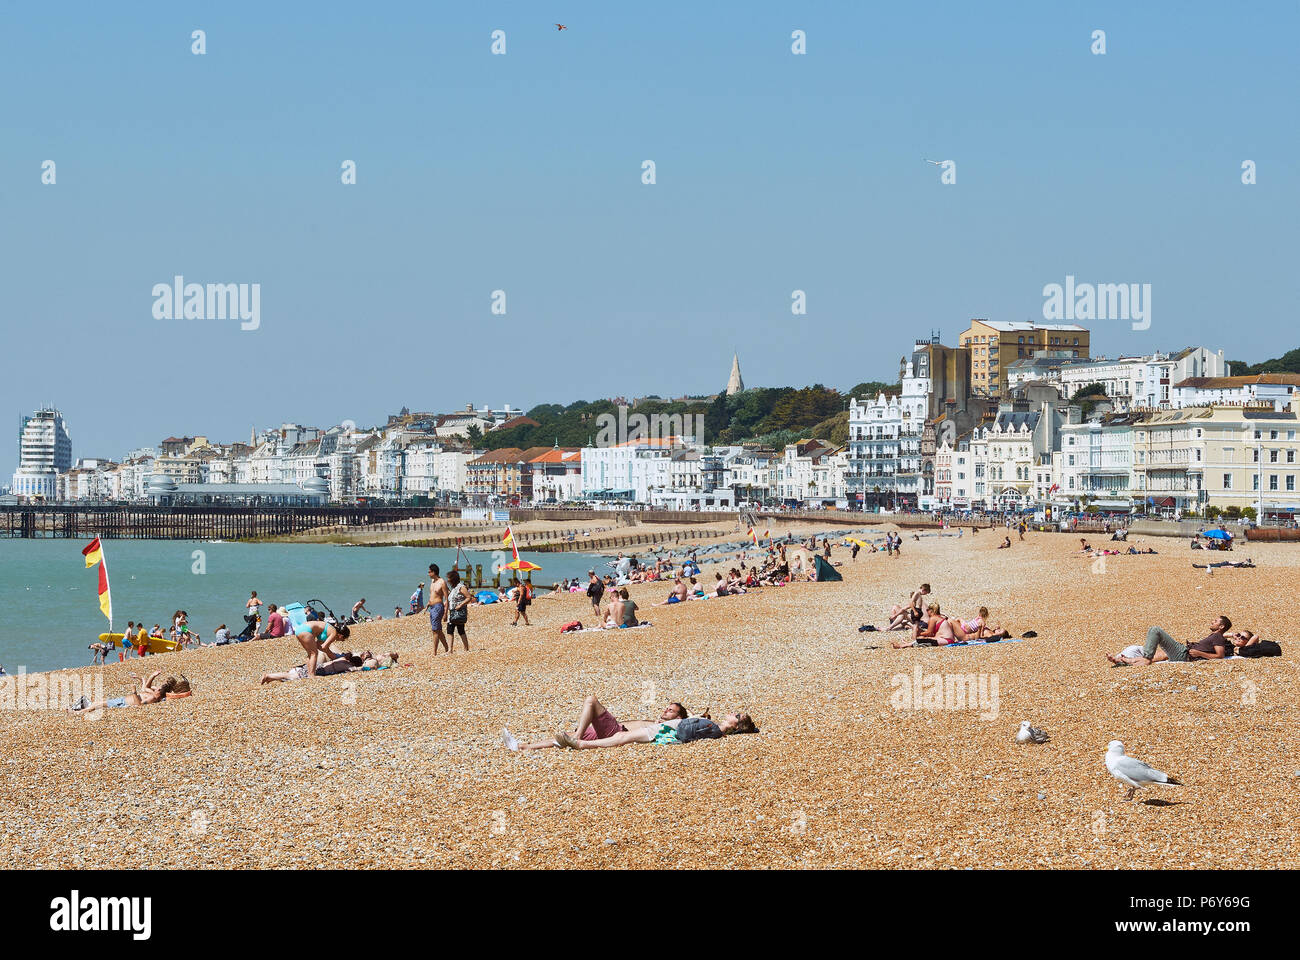 Sonnenanbeter am Strand von Hastings, East Sussex, UK im Juni Stockfoto